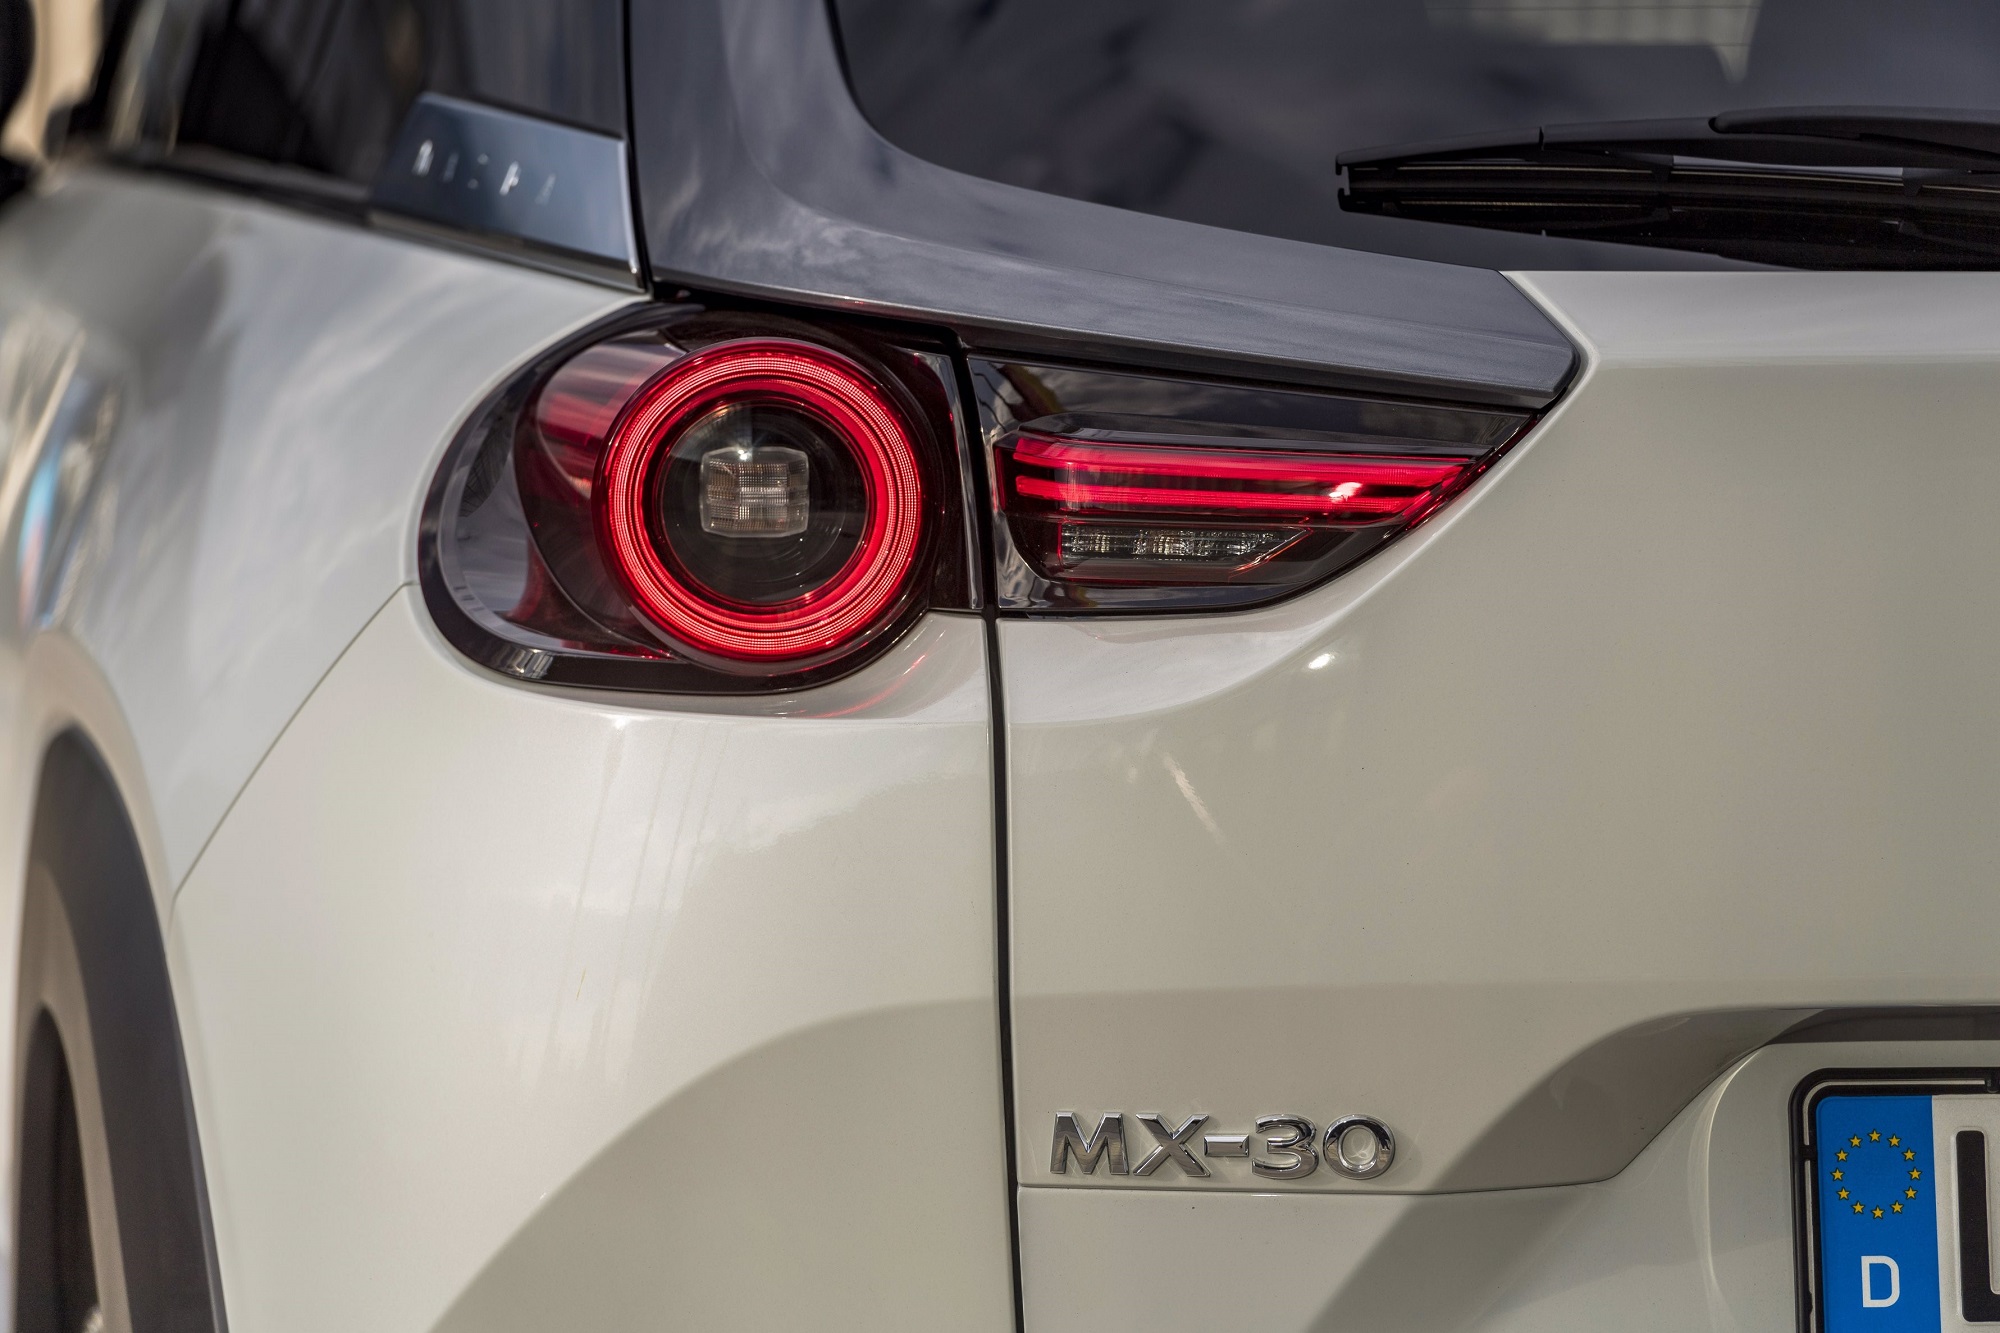 Mazda MX-30 100% eléctrico por 29.900 euros? Sim, é possível, com a nova Campanha Mazda 18